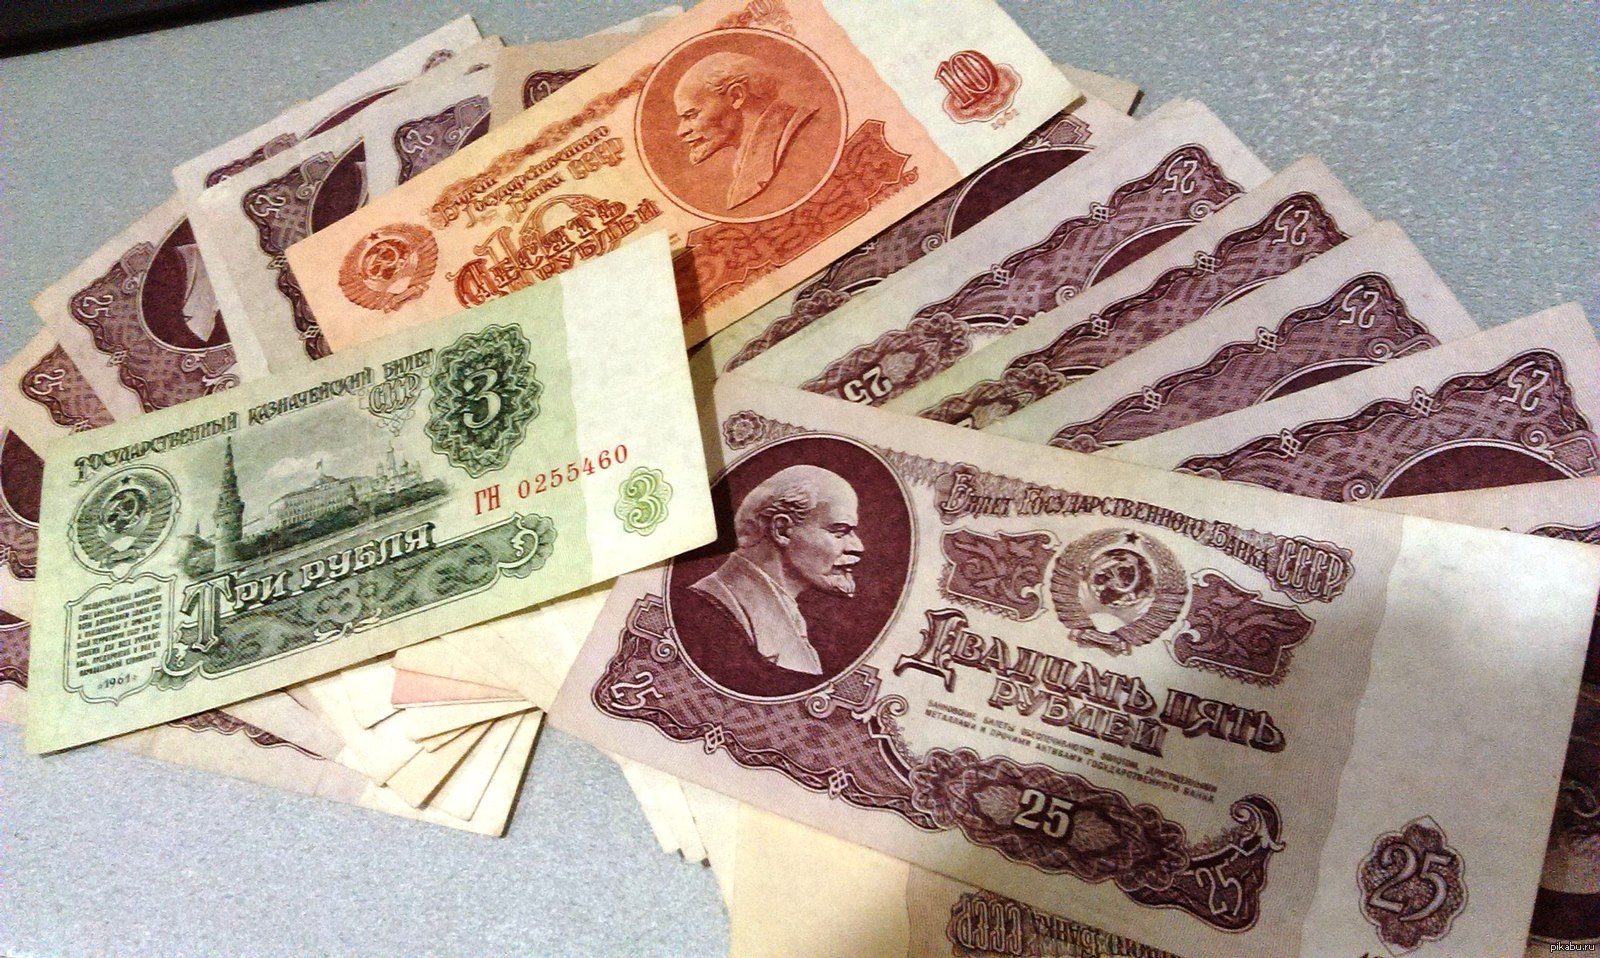 Деньги СССР